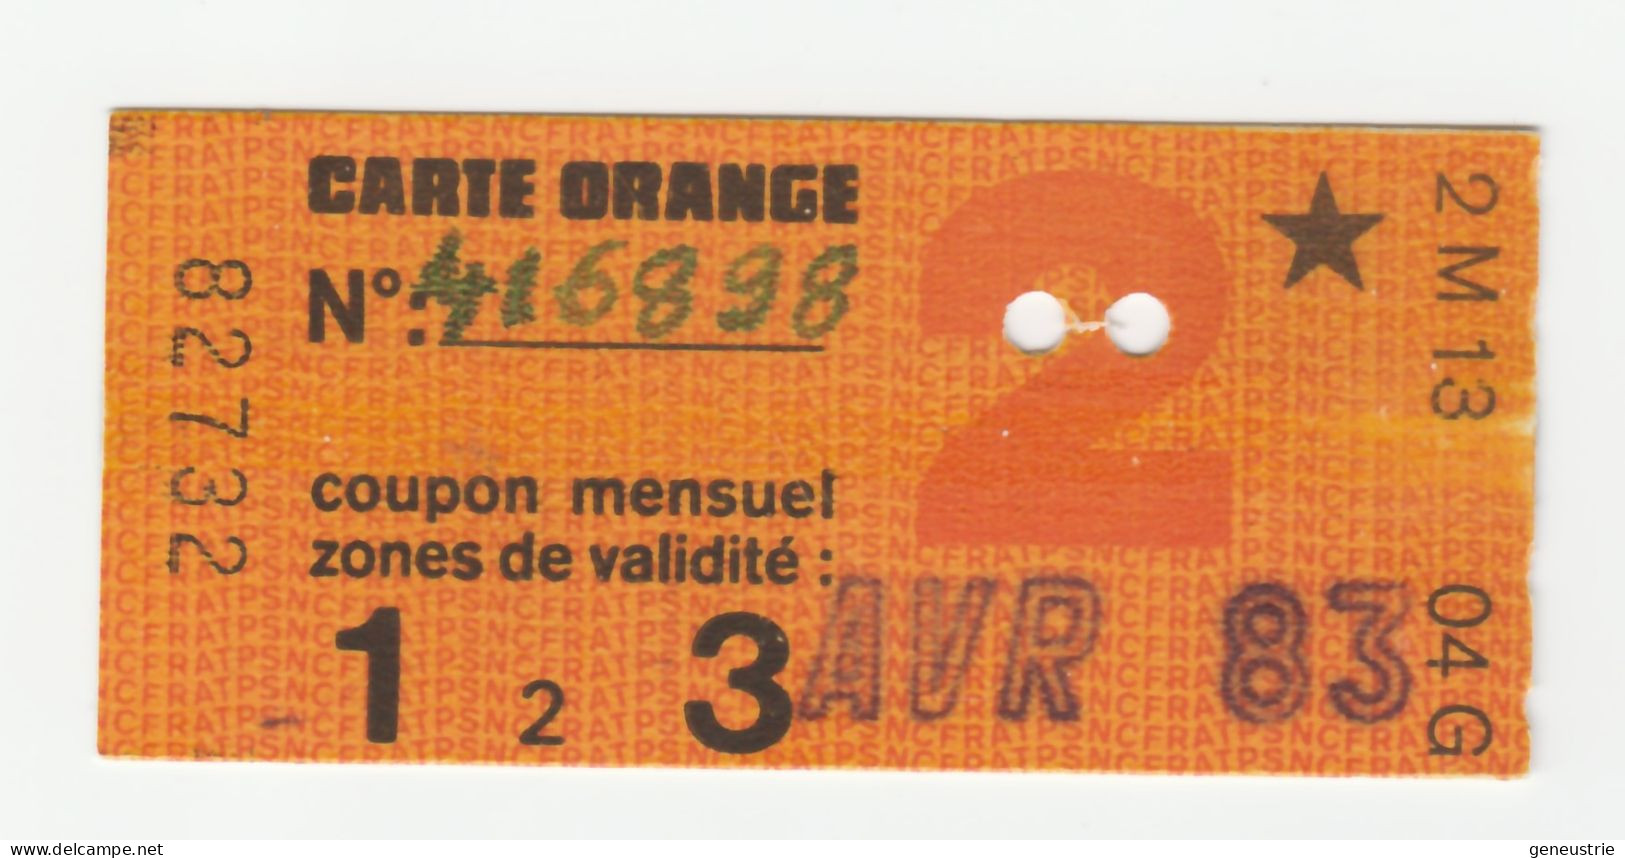 Ticket De Carte Orange Paris "Type Etoile" Avril 1983 - 2e Classe - Zones 1 à 3 - SNCF / RATP - Métro Parisien - Europa